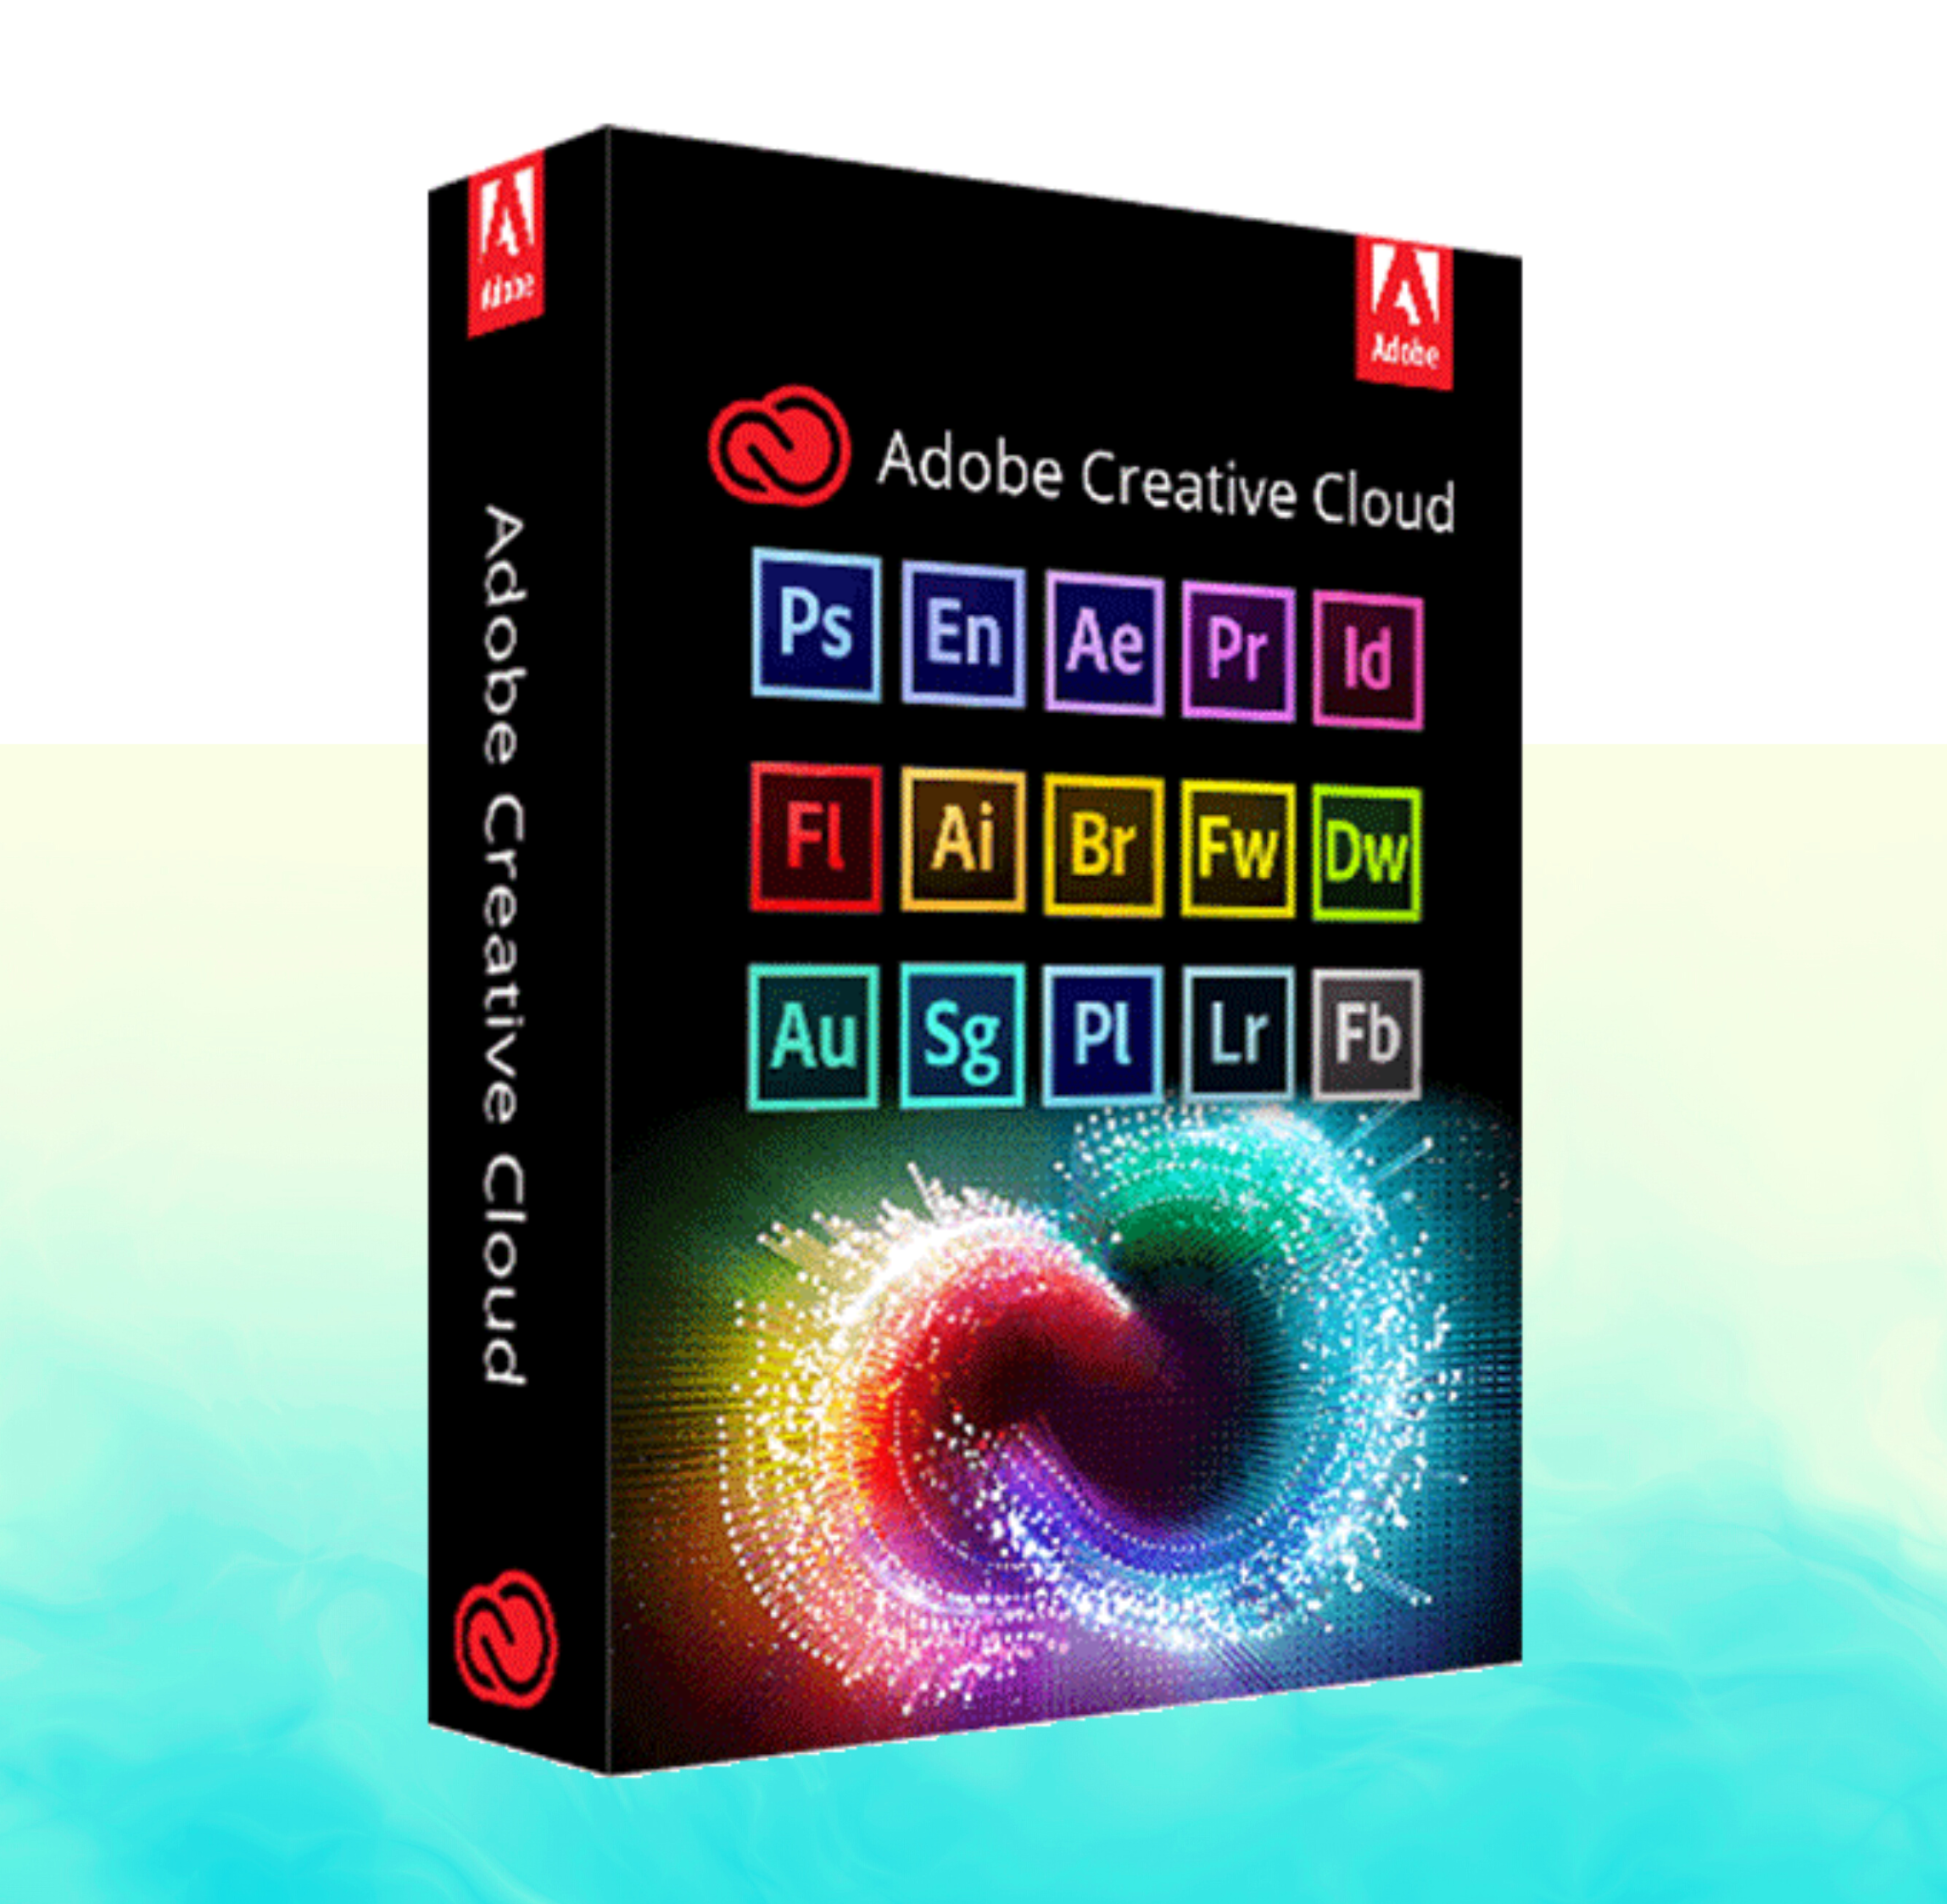 Adobe Master collection 2022. Adobe Creative. Creative cloud. Adobe Creative cloud 2023.